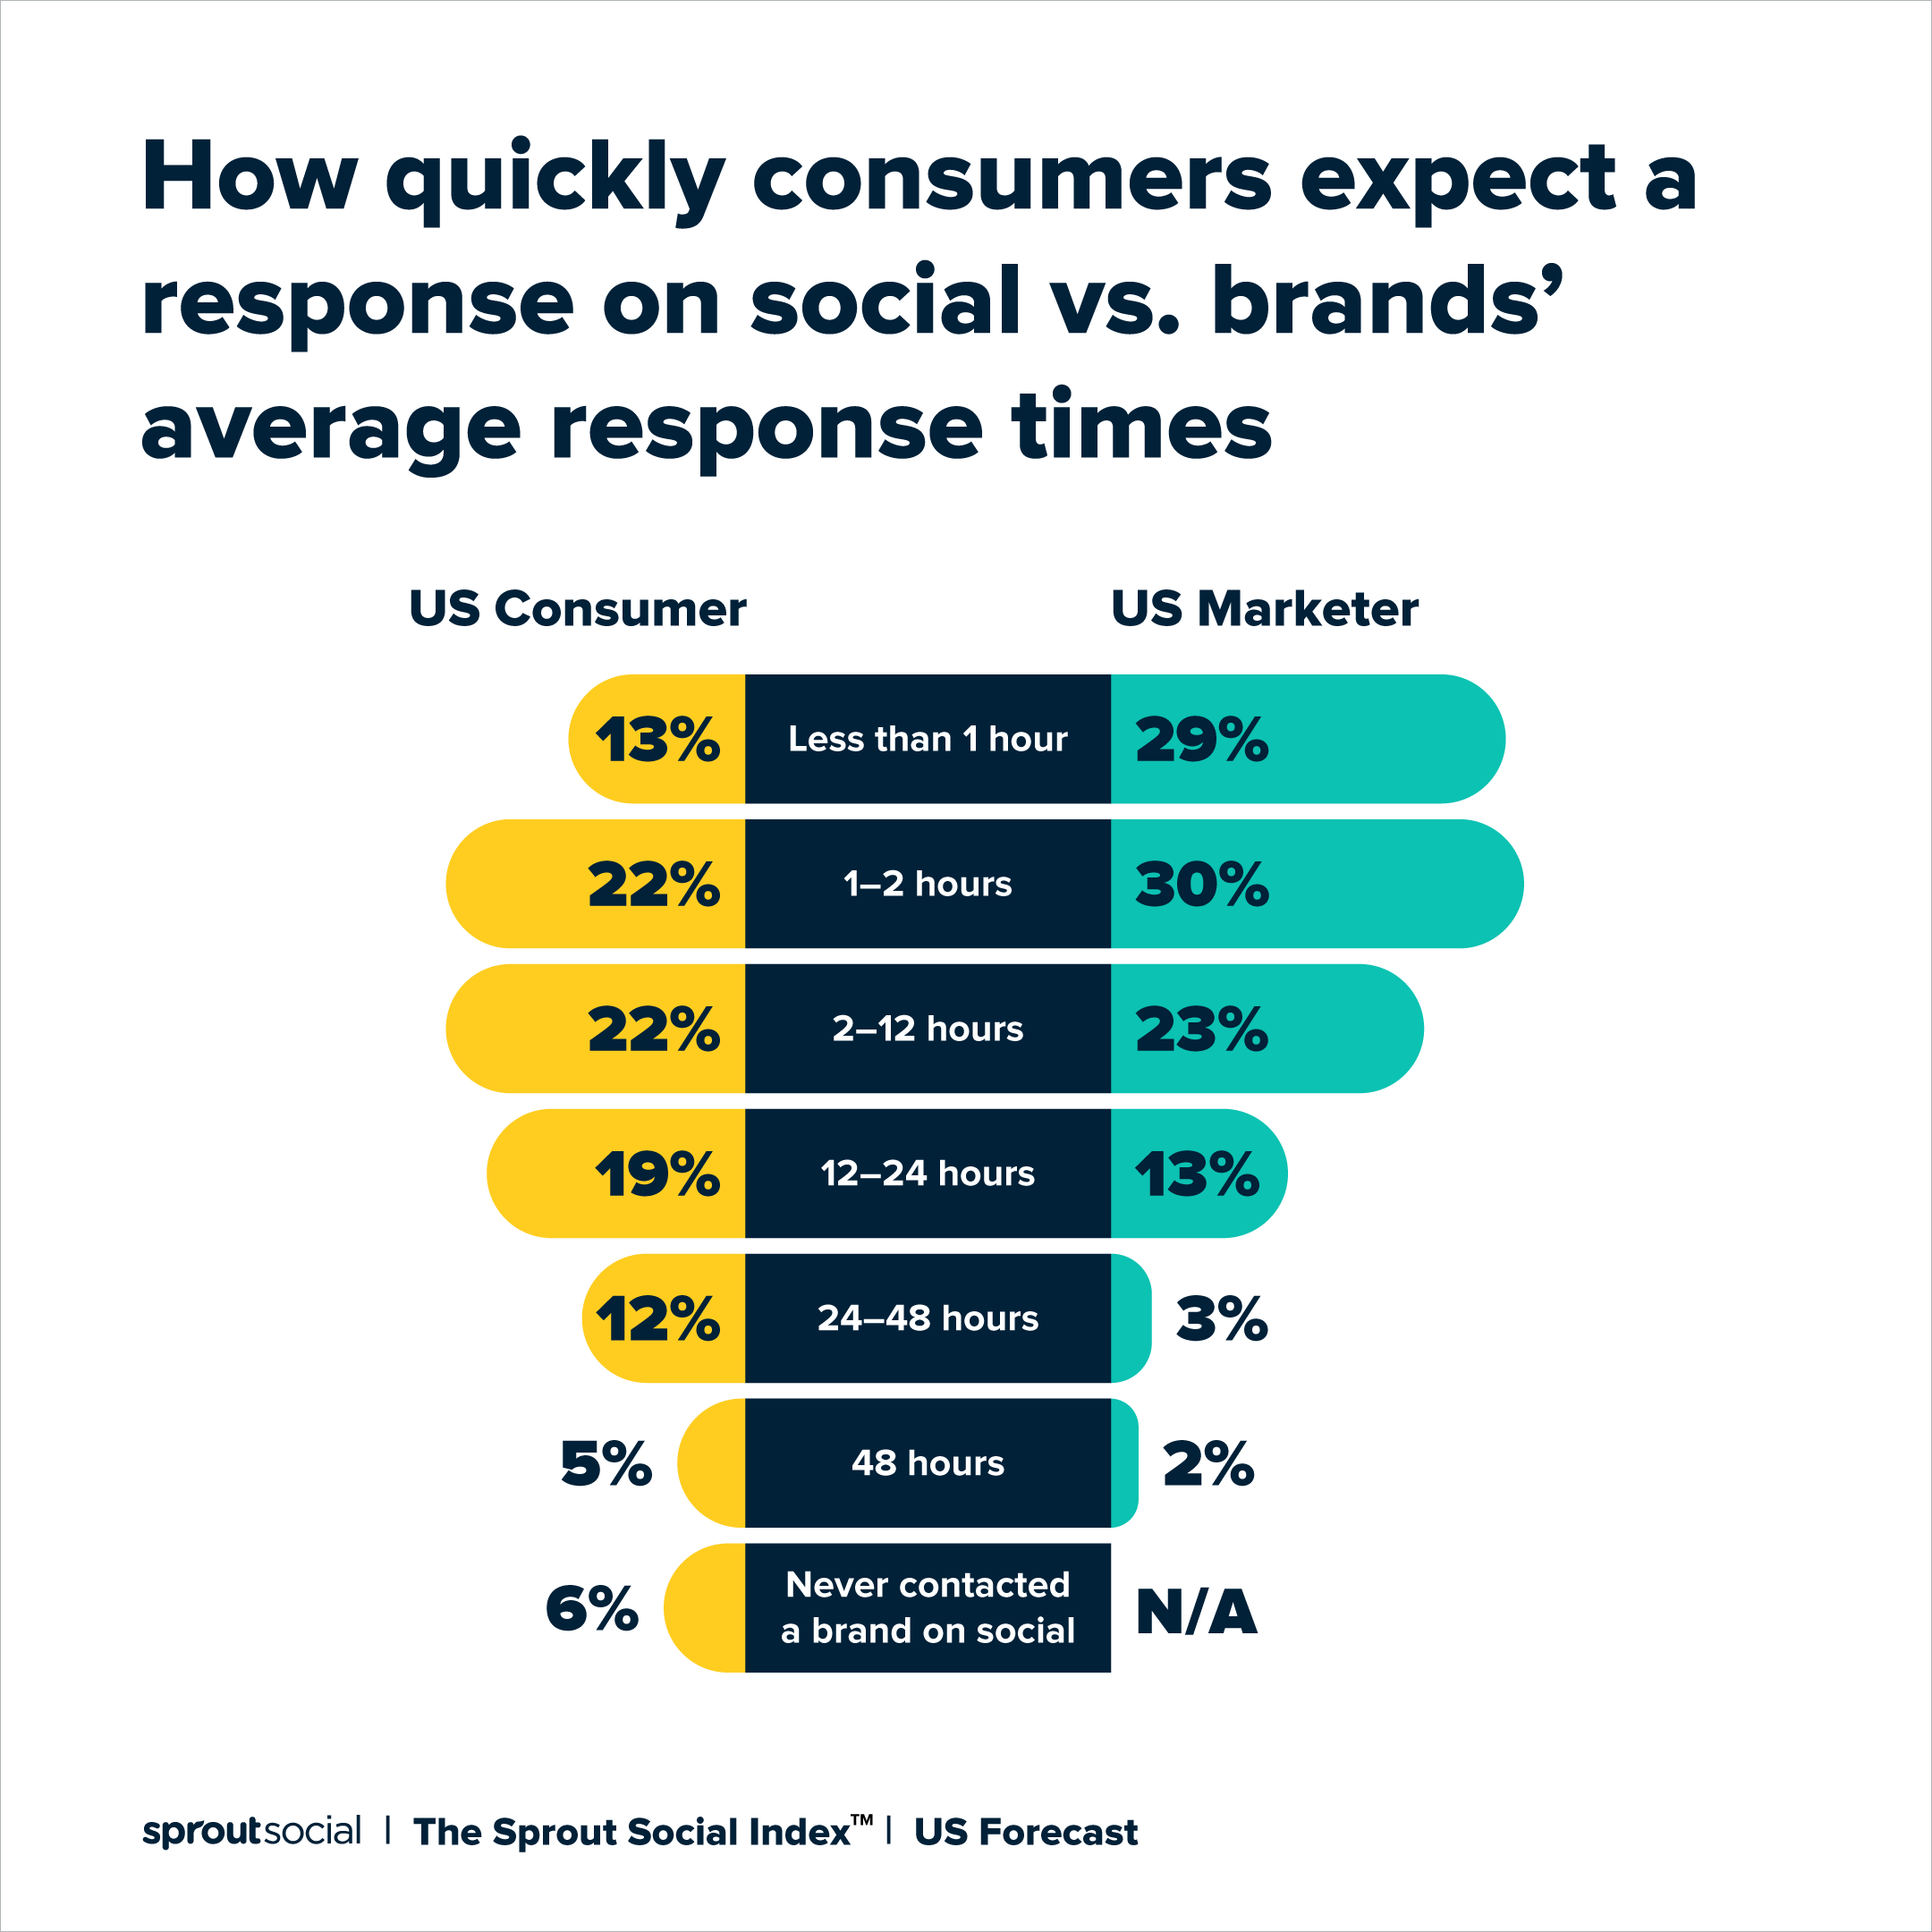 تجسم داده‌ها که توضیح می‌دهد که مصرف‌کنندگان با چه سرعتی نسبت به میانگین زمان پاسخ‌دهی برندها انتظار پاسخ در شبکه‌های اجتماعی را دارند. 